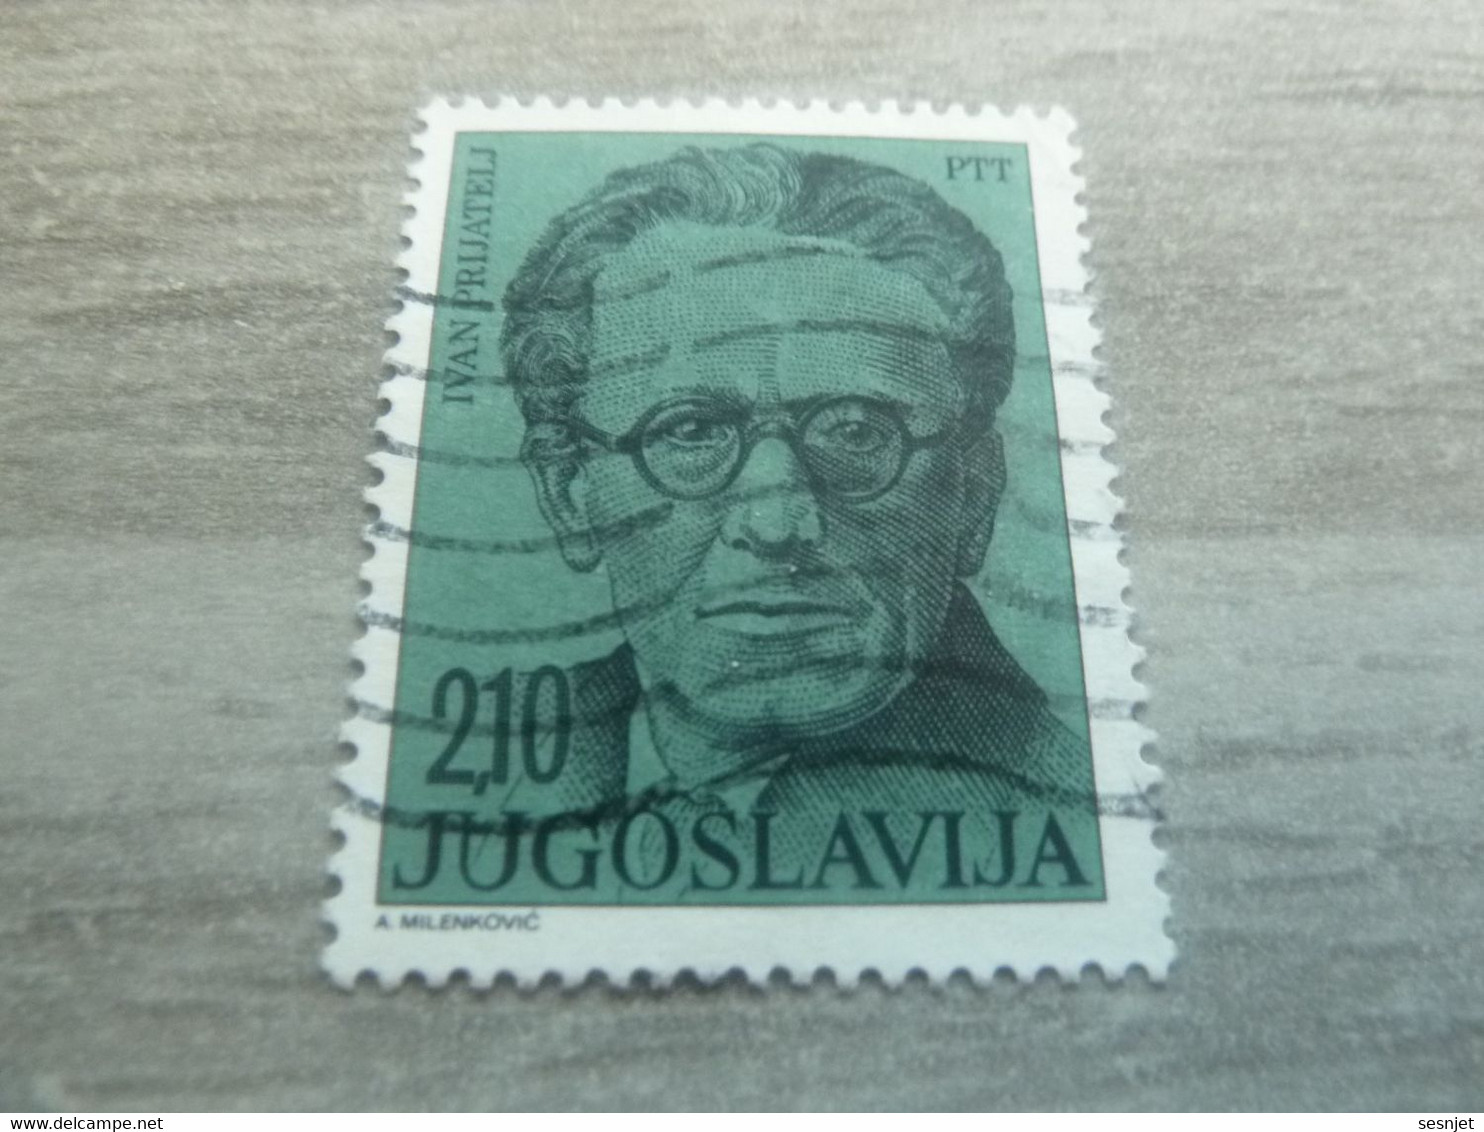 Ptt - Jugoslavija - Ivan Prijatelj - Val 2.10 - Bleu-vert - Oblitéré - - Usados